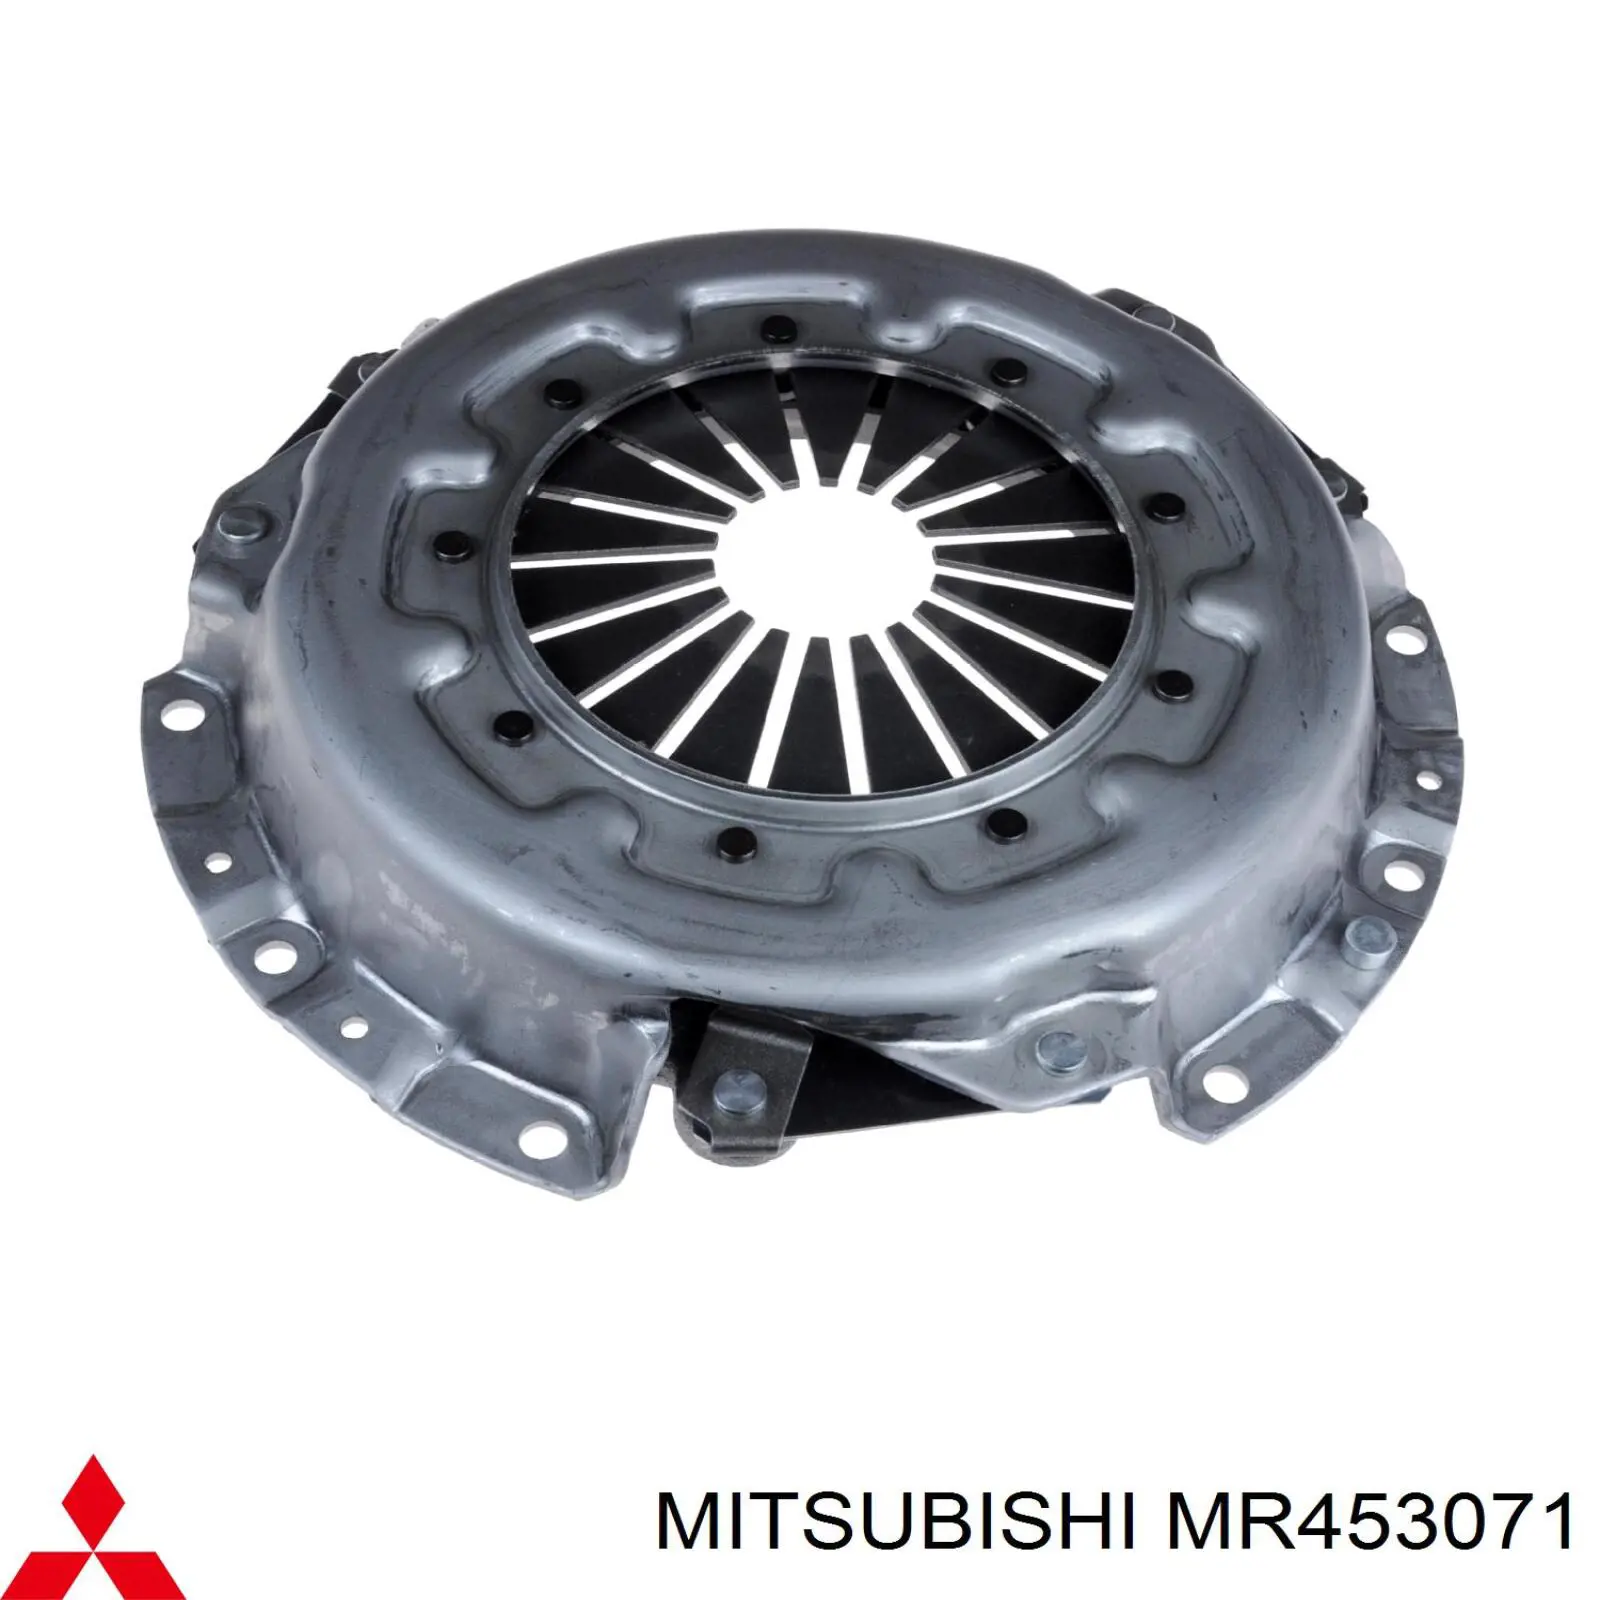 MR453071 Mitsubishi plato de presión del embrague